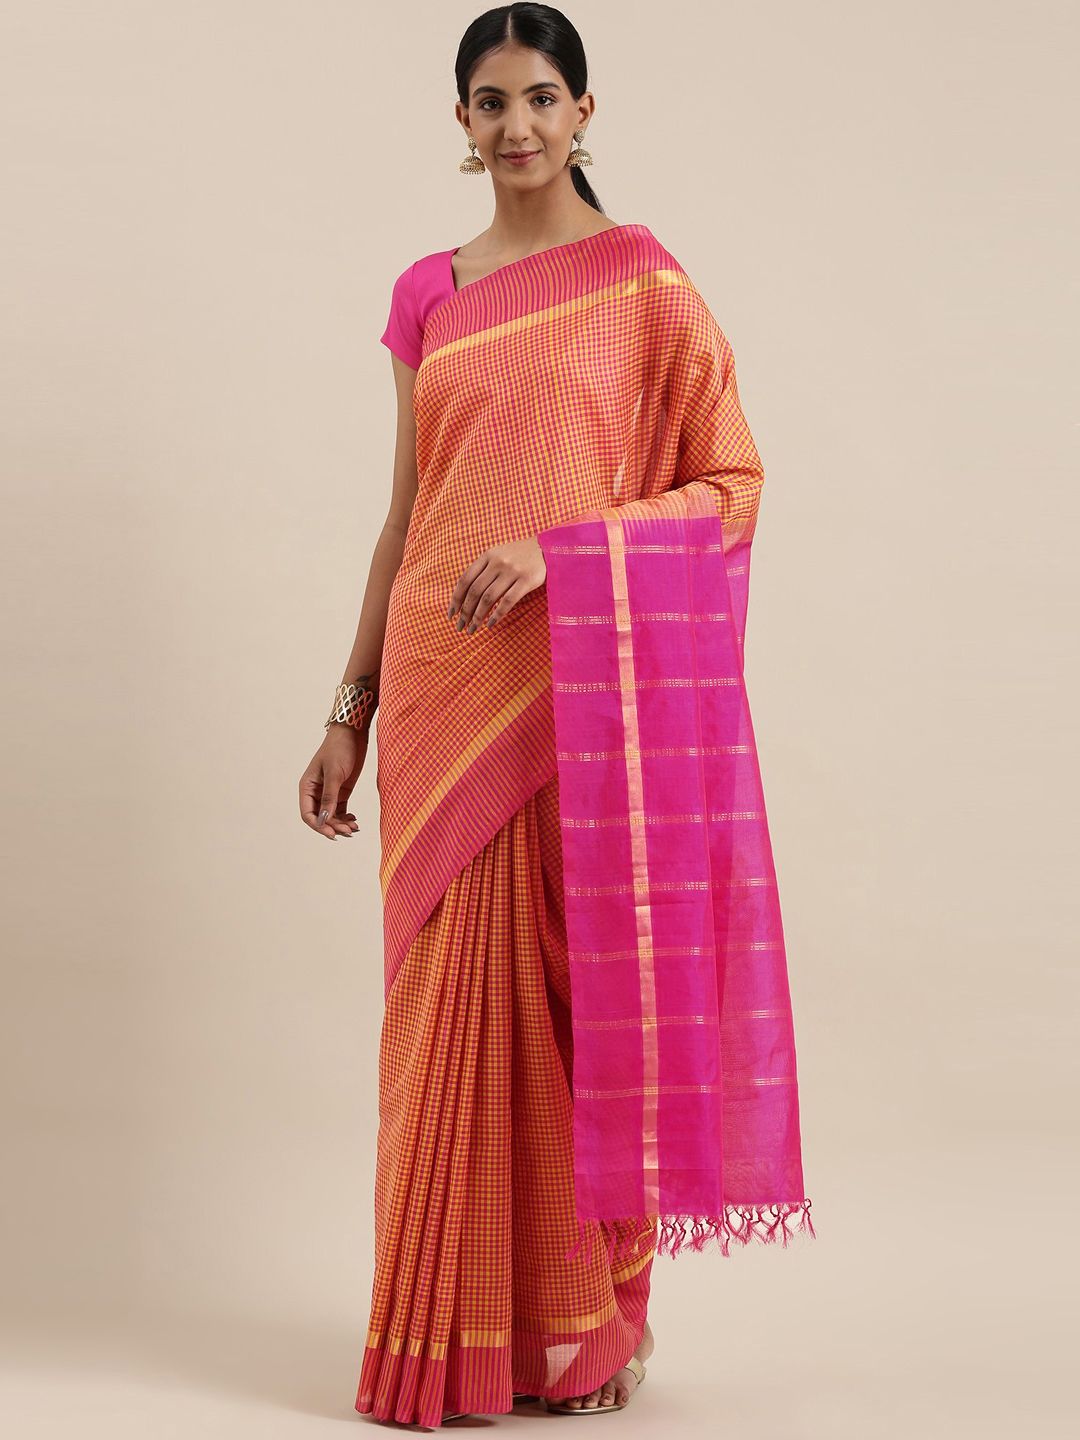 The Chennai Silks Classicate Pink & Yellow Checked Silk Cotton Maheshwari Saree Price in India